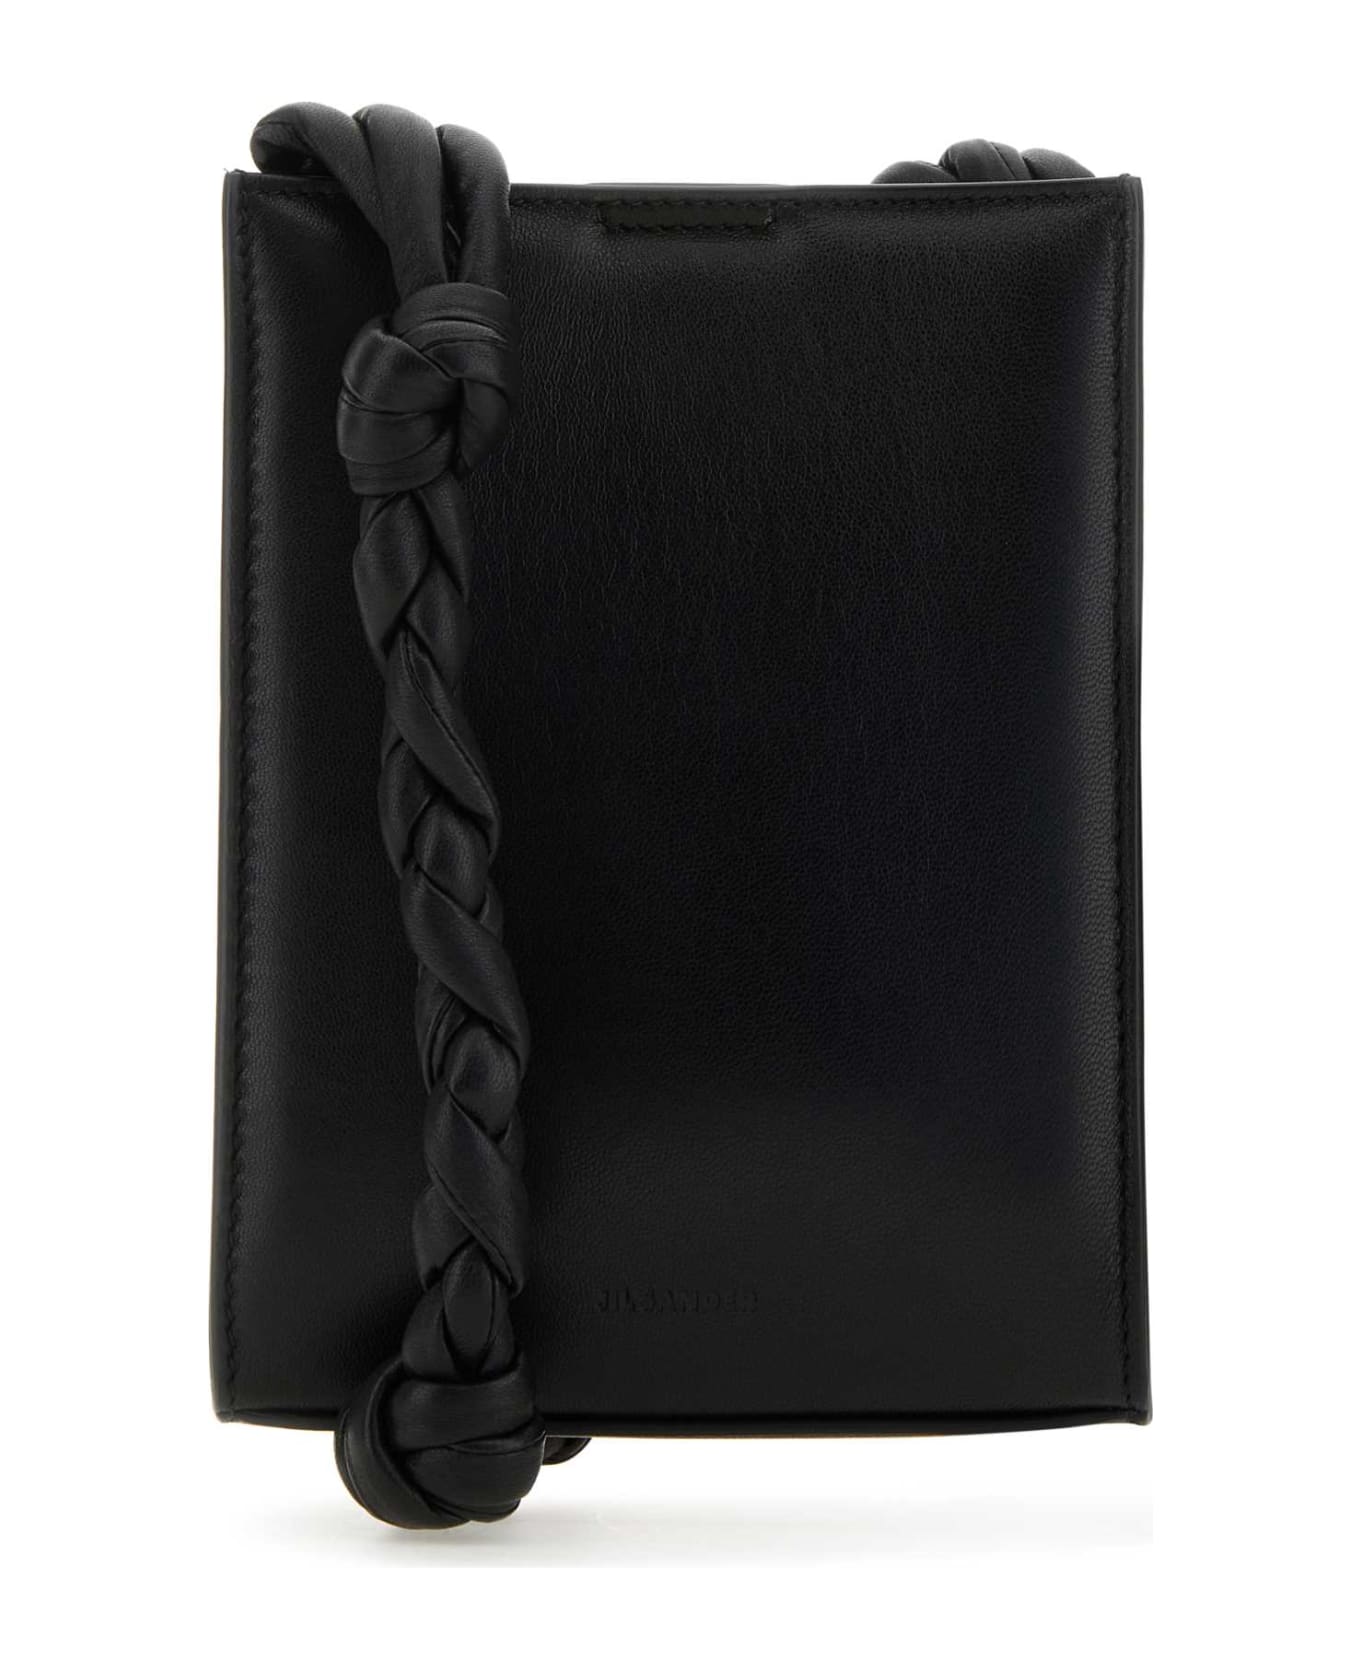 Jil Sander Black Leather Tangle Shoulder Bag - 001 クラッチバッグ